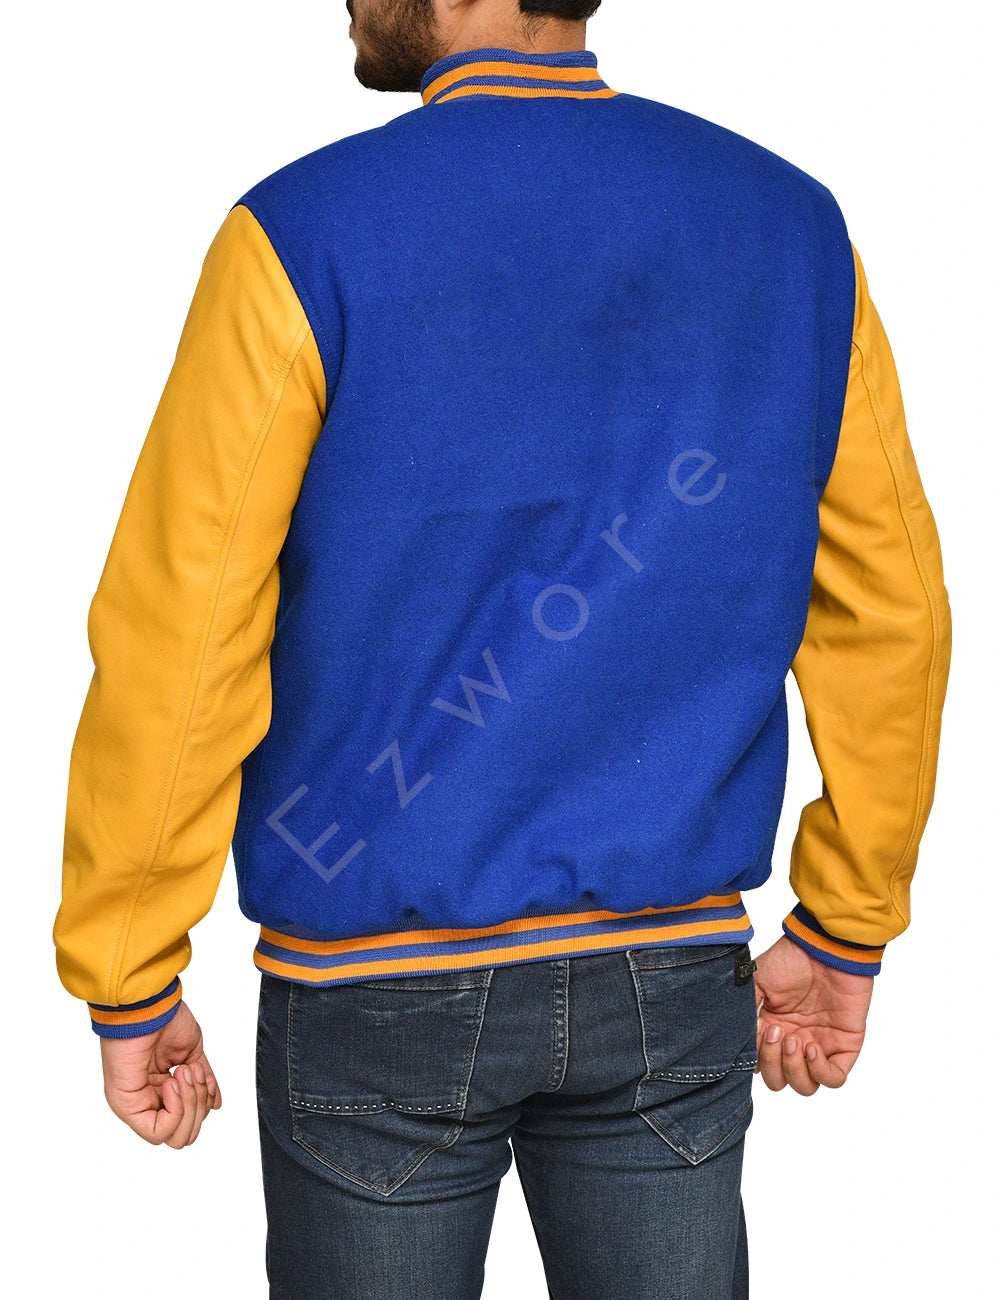 Yellow and Royal Blue Varsity Jacket